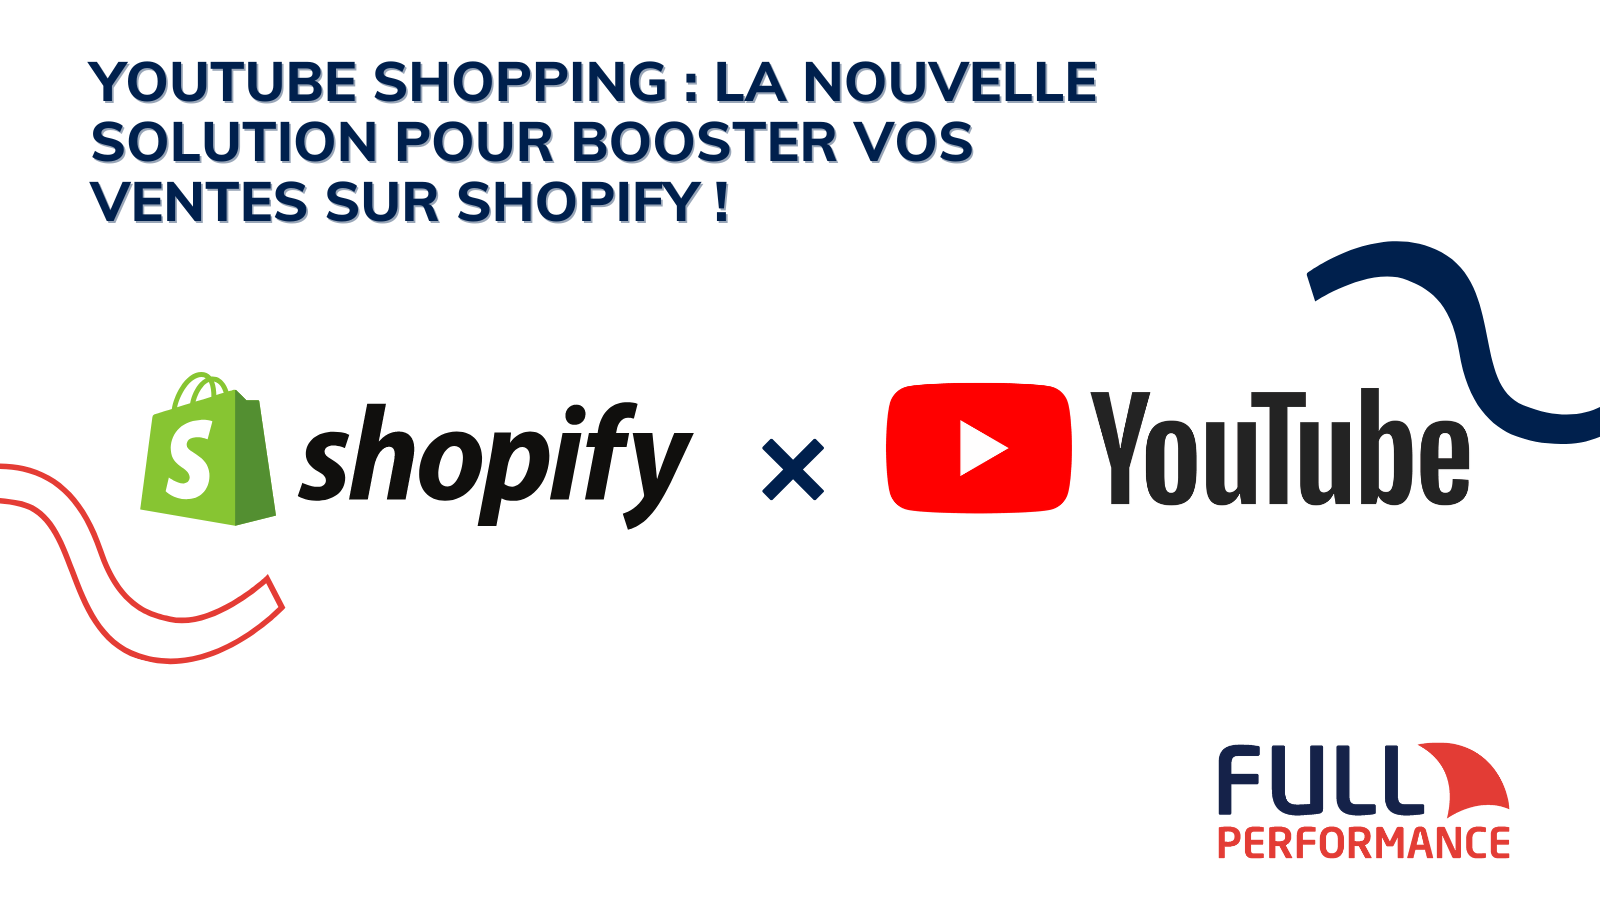 YouTube Shopping : La nouvelle solution pour booster vos ventes sur Shopify !